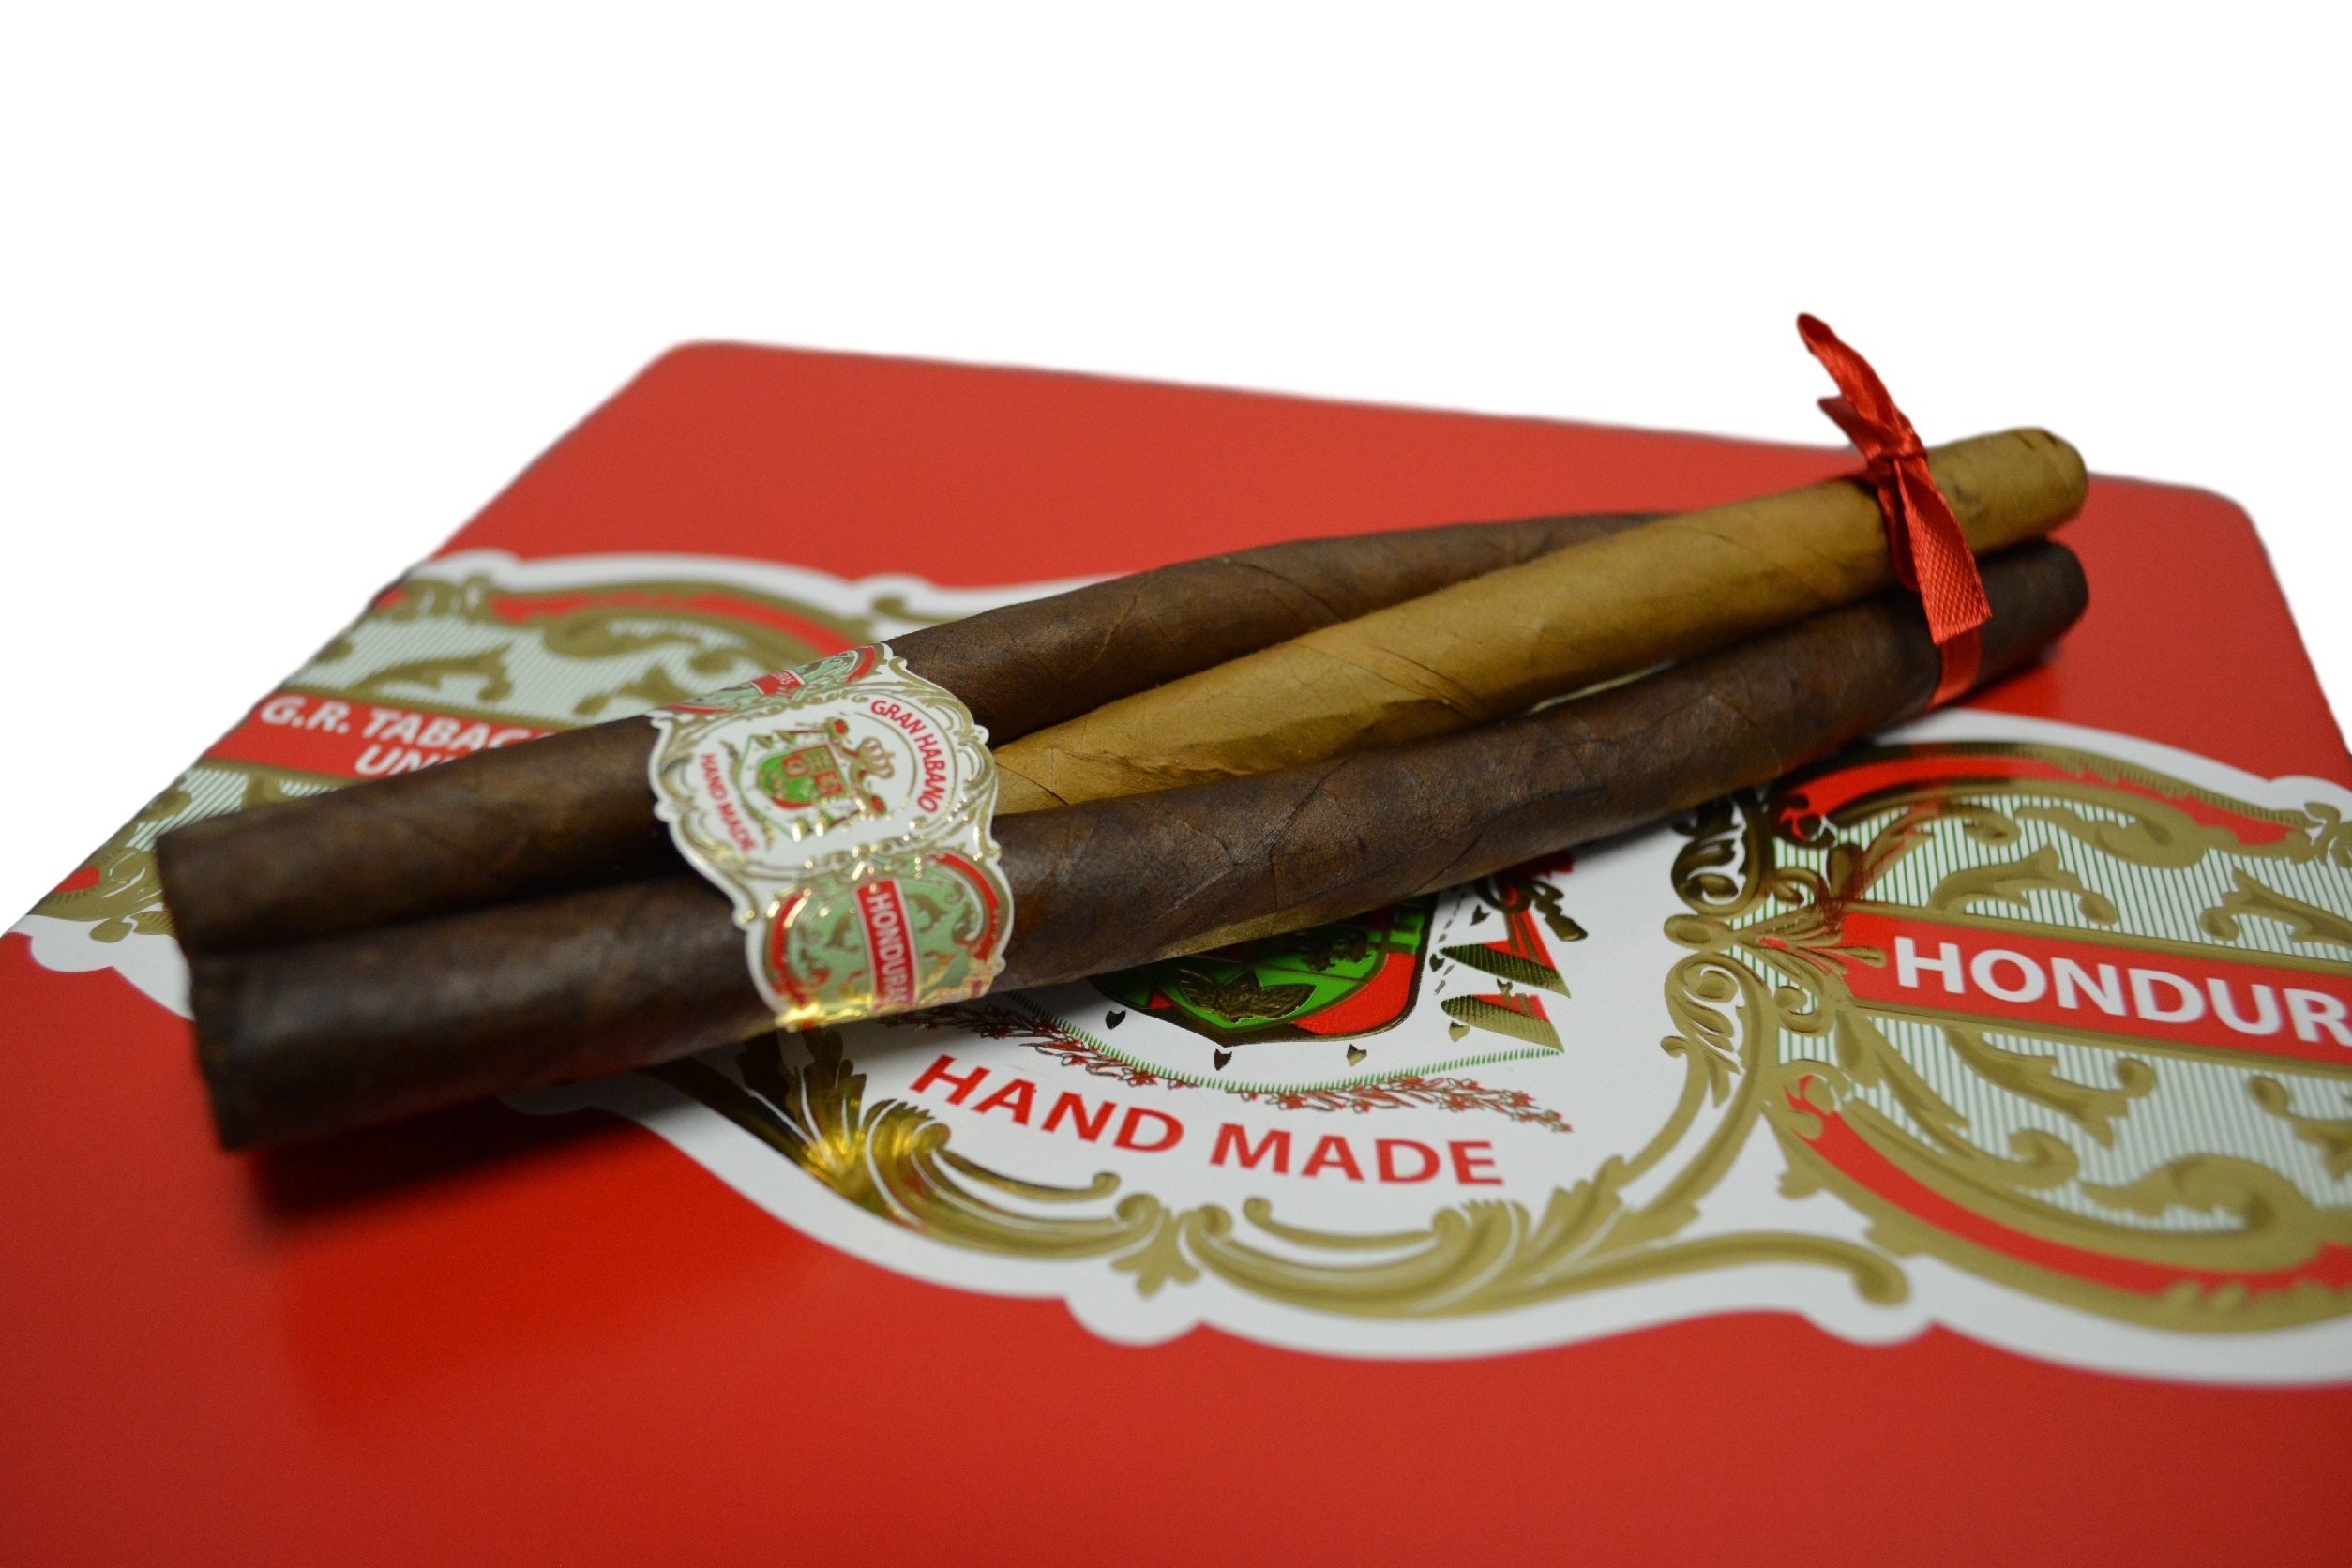 Gran Habano - 3 Reyes Magos - Box and cigars 5